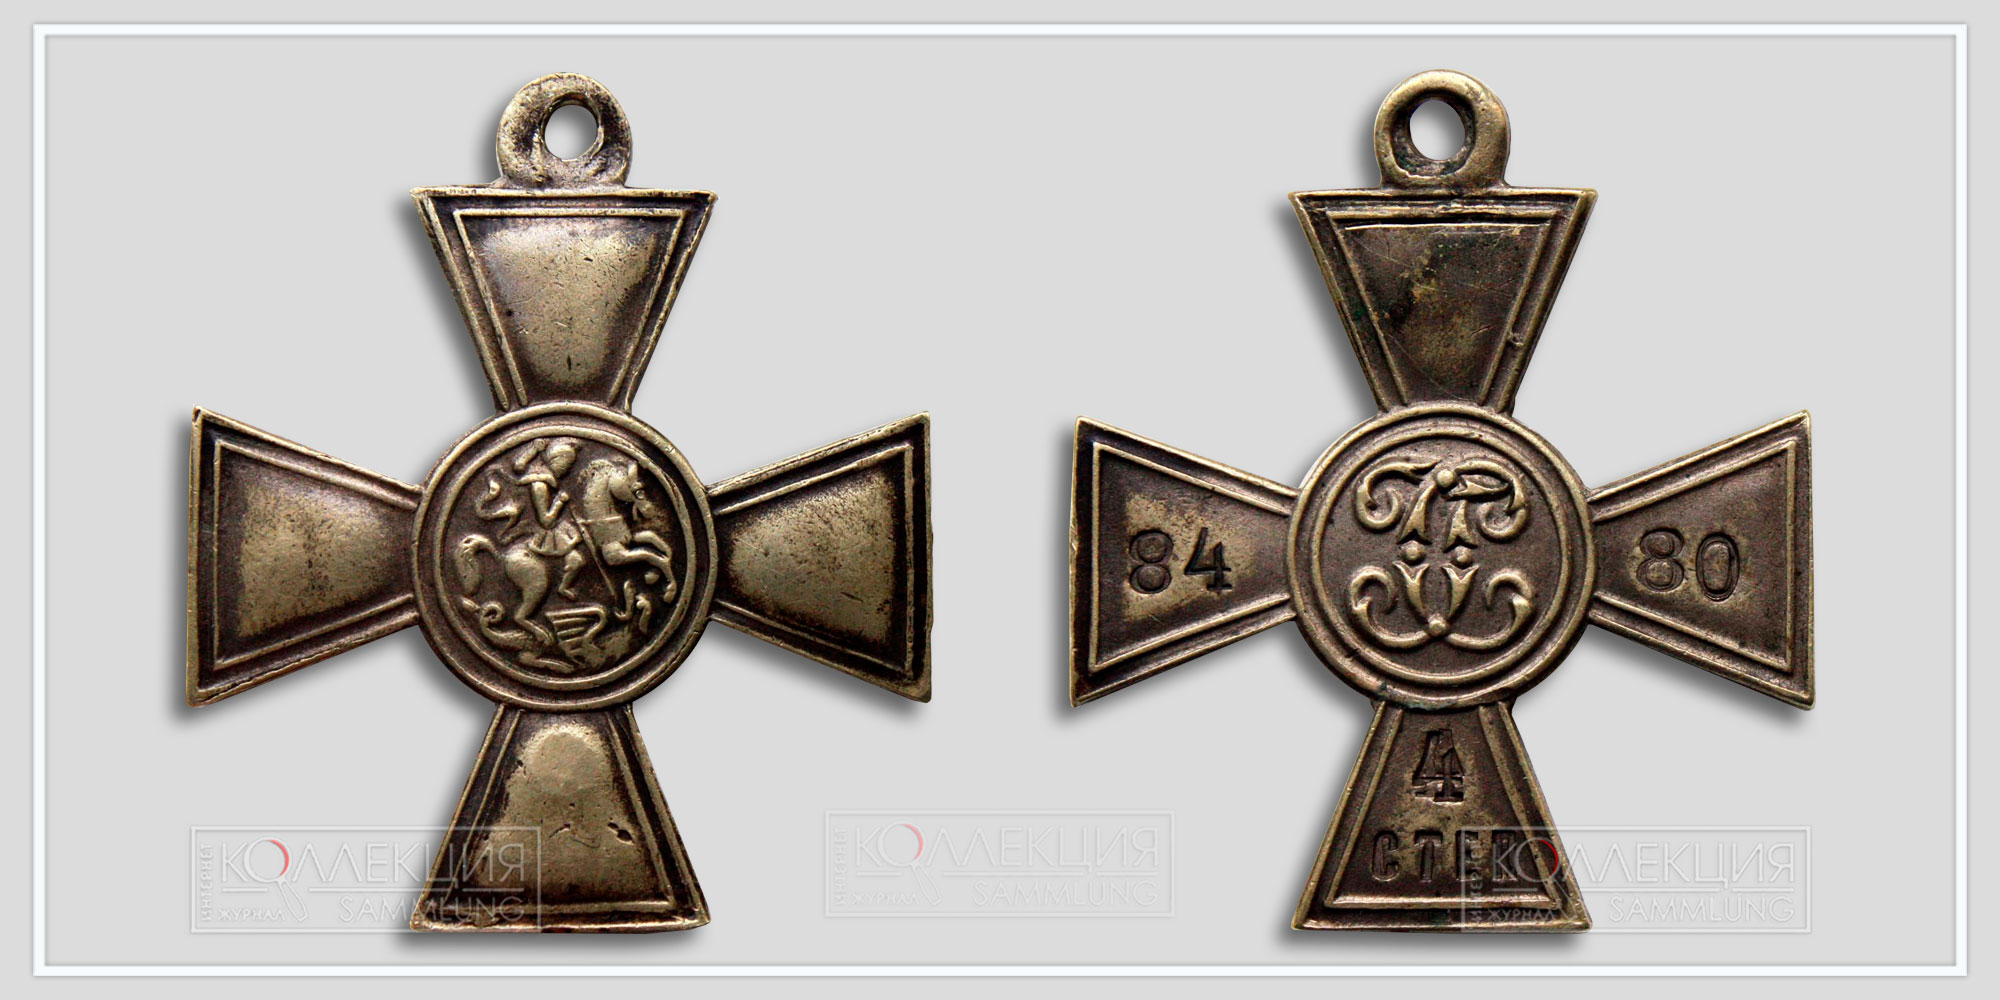 Георгиевский крест 4 ст. №8.480 Мастер НД (Любезно предоставил Бабаев Виктор г. Кемерово)